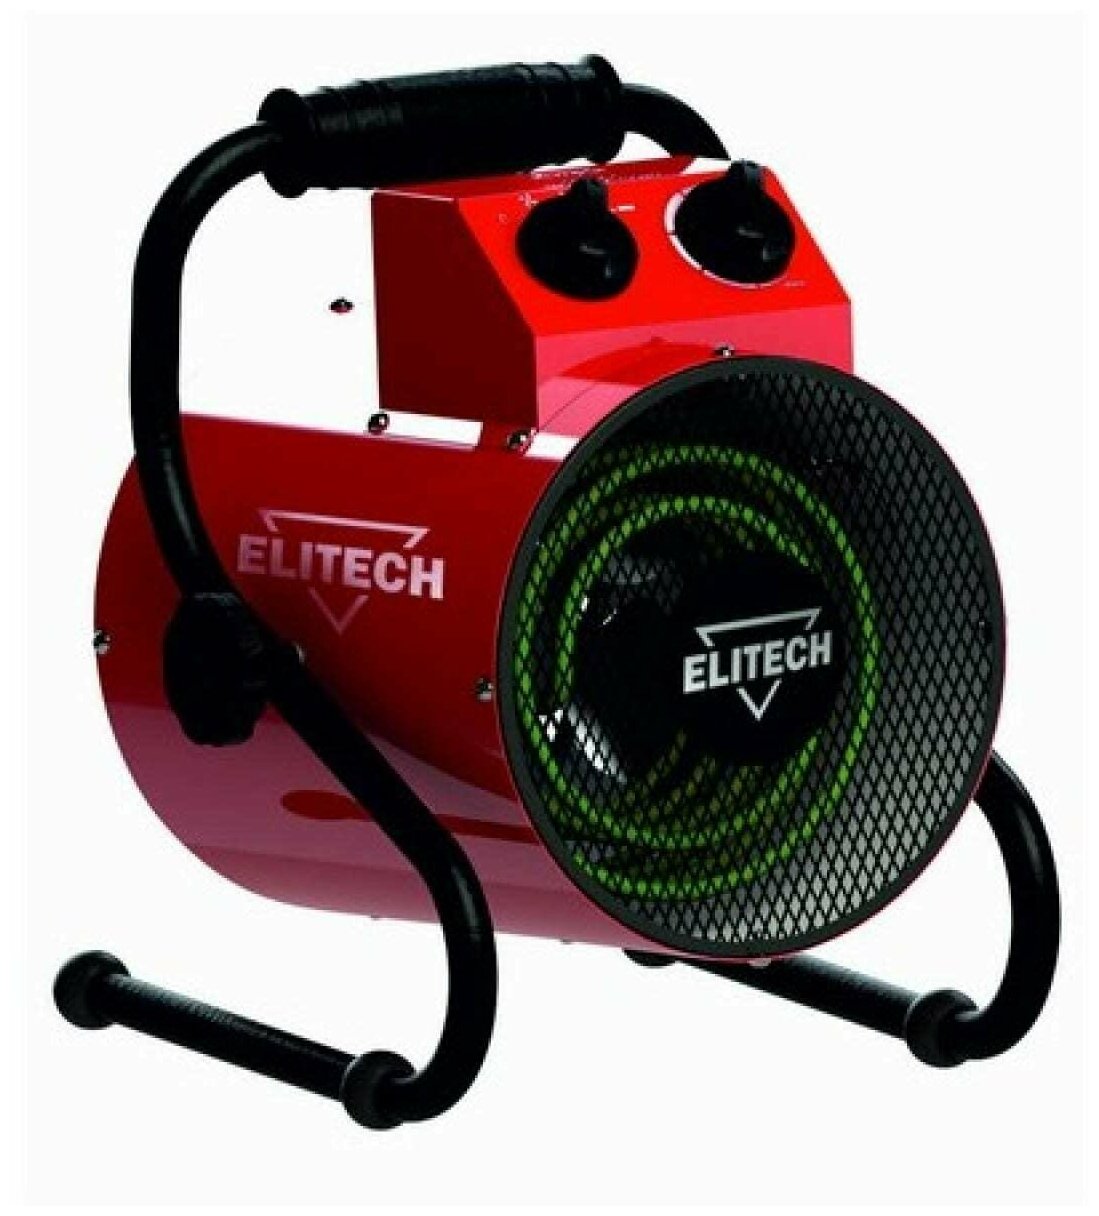 Электрическая тепловая пушка Elitech ТВ 3ЕК подарок на день рождения мужчине, любимому, папе, дедушке, парню